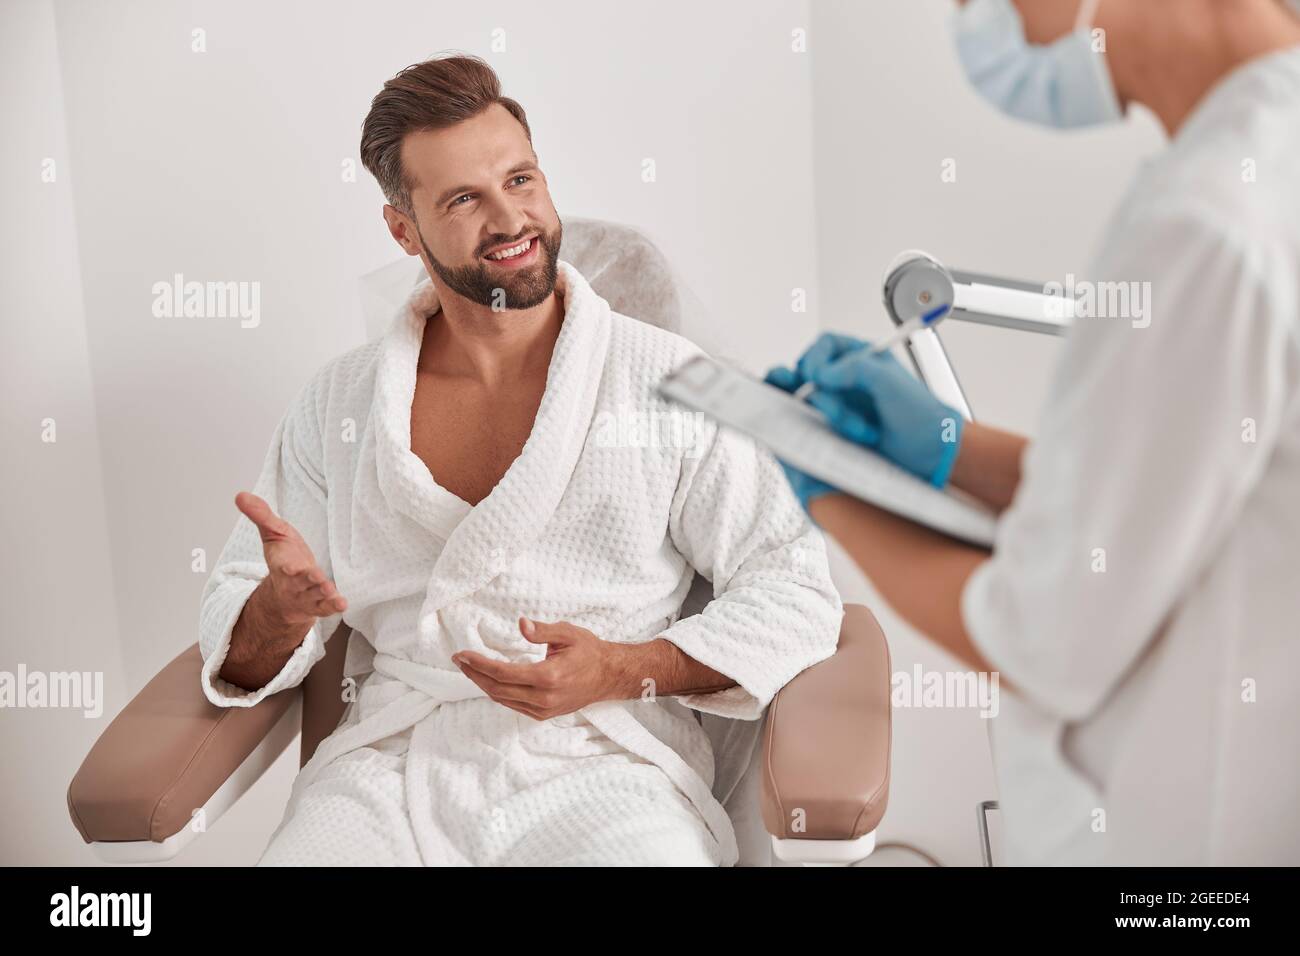 Lächelnder Mann spricht mit dem Administrator, der das Formular ausfüllt, während er den Patienten in der Klinik untersucht Stockfoto